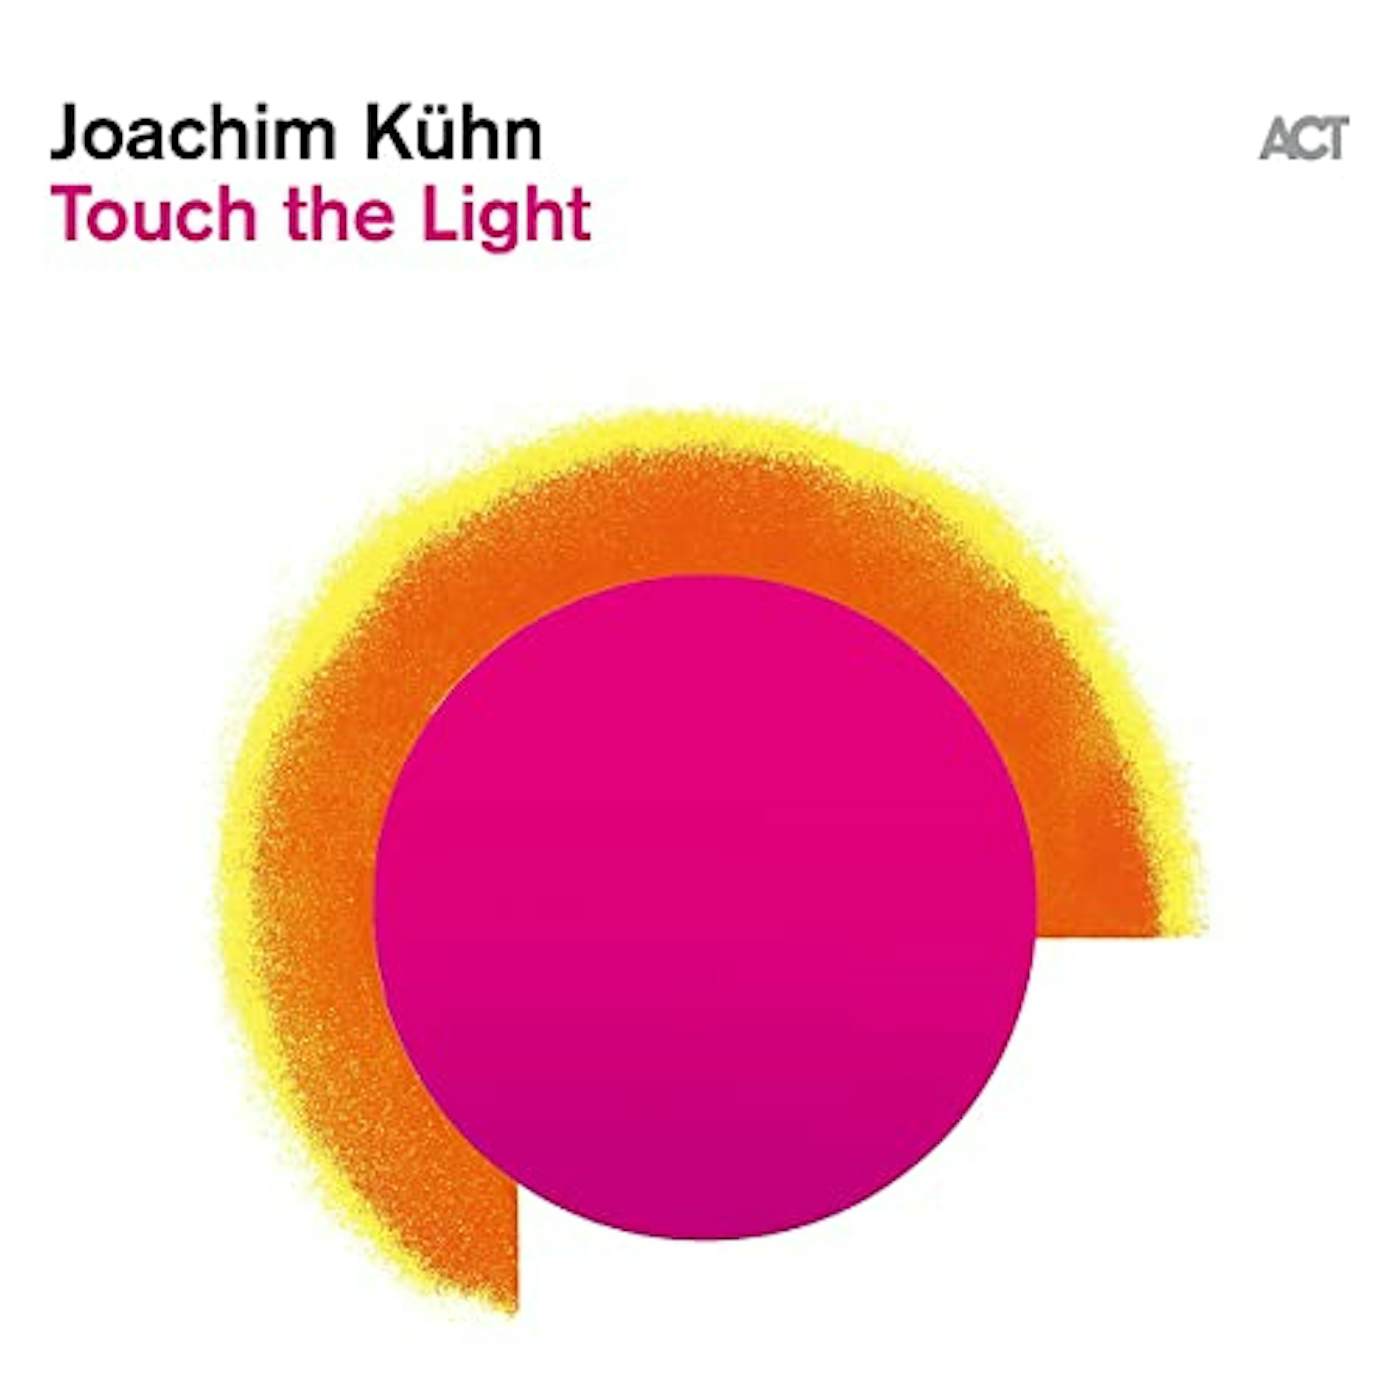 Joachim Kuhn Touch The Light Vinyl Record